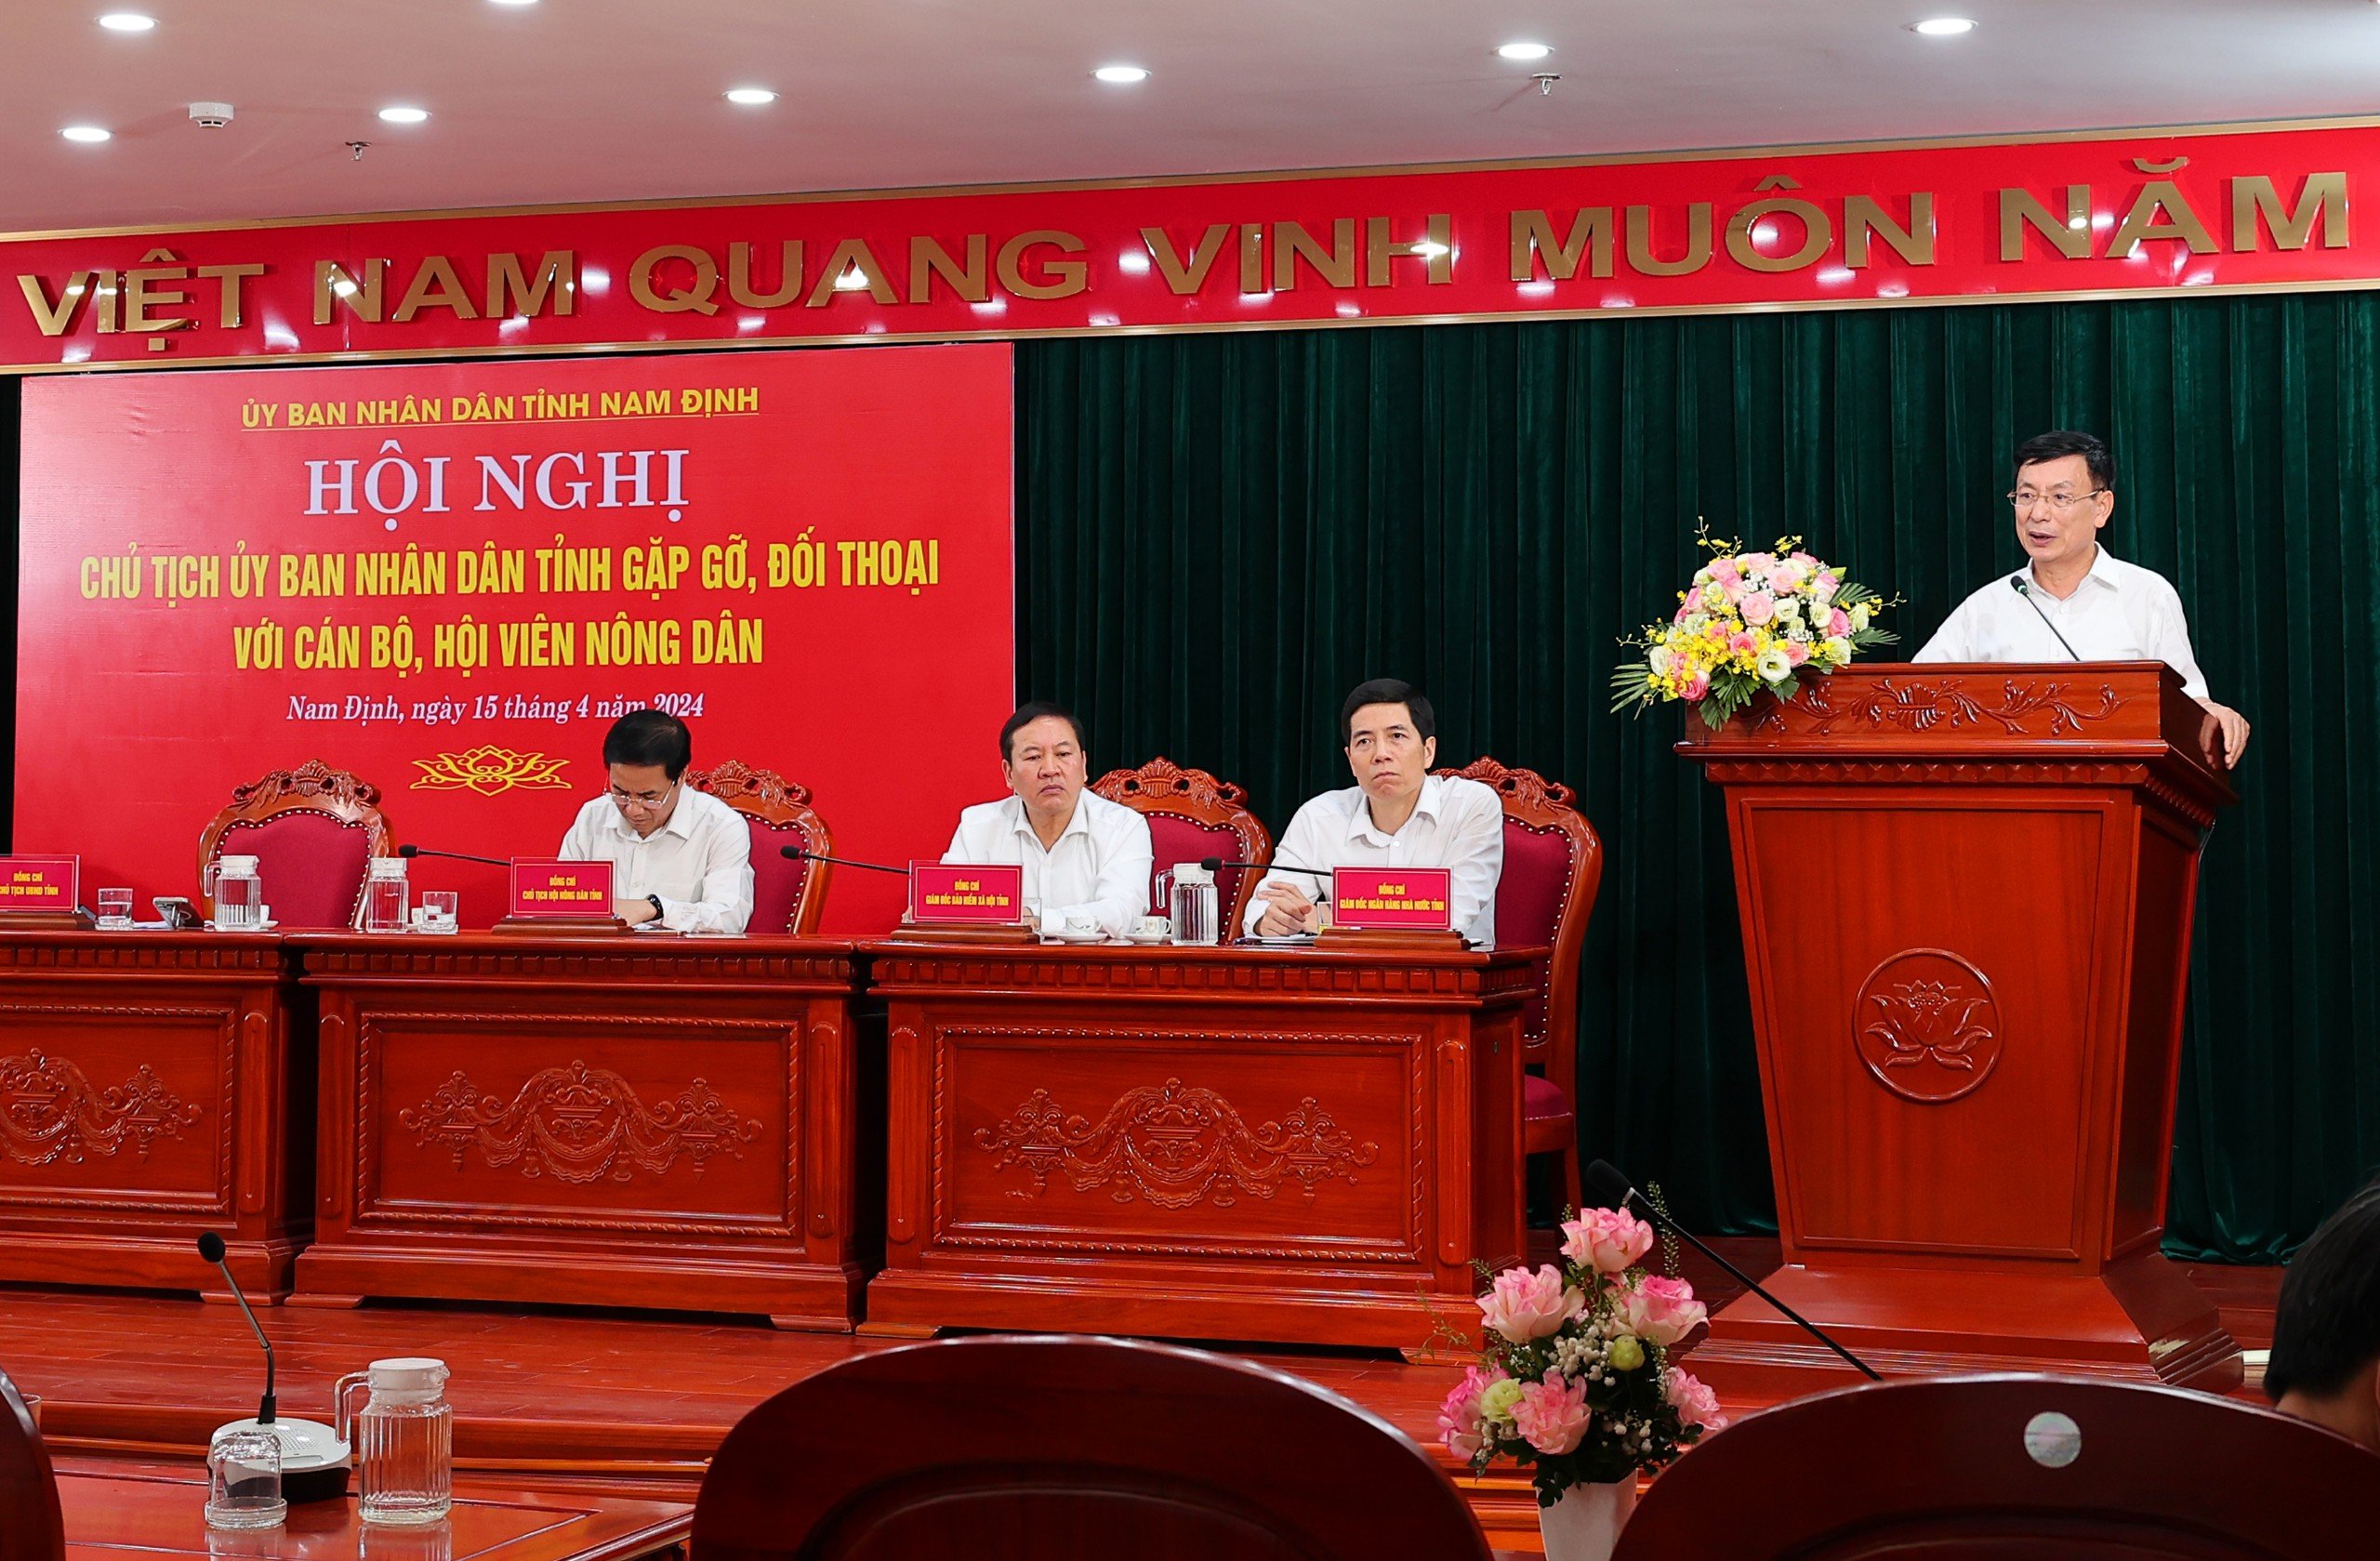 Chủ tịch UBND tỉnh Nam Định đối thoại với nông dân: Giải đáp 5 vấn đề lớn nông dân quan tâm- Ảnh 3.